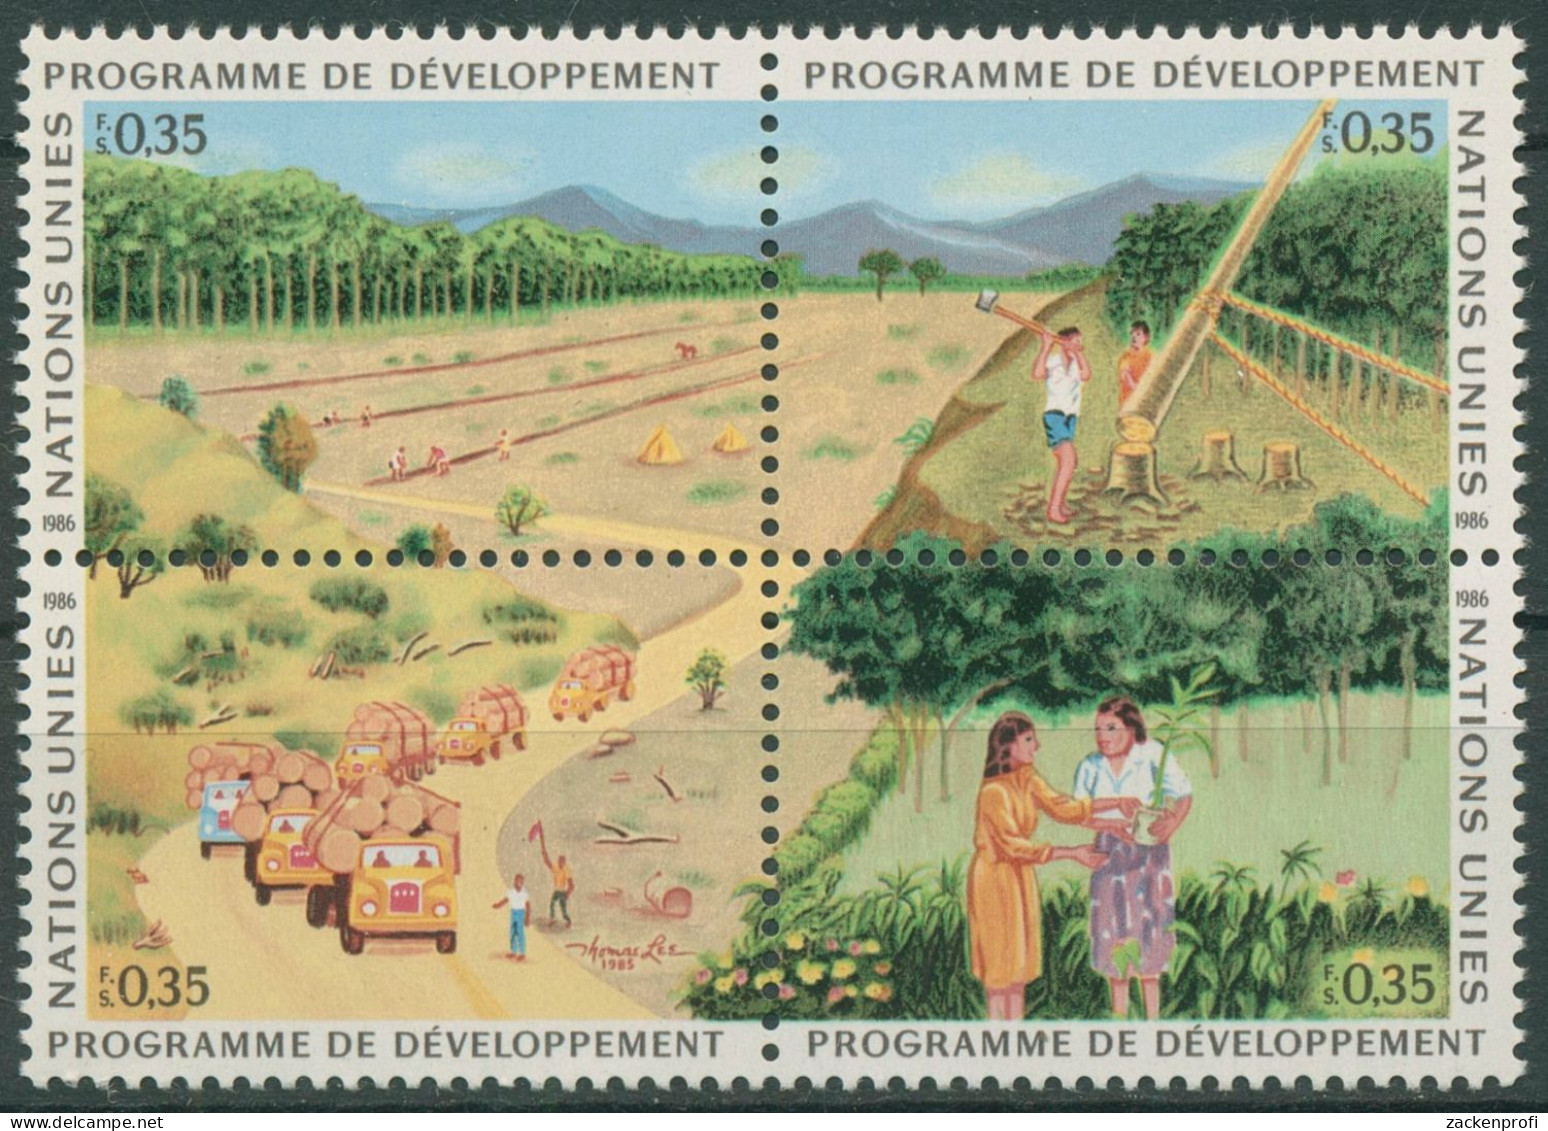 UNO Genf 1986 Entwicklungsprogramm Wald Aufforstung 138/41 ZD Postfrisch - Ungebraucht